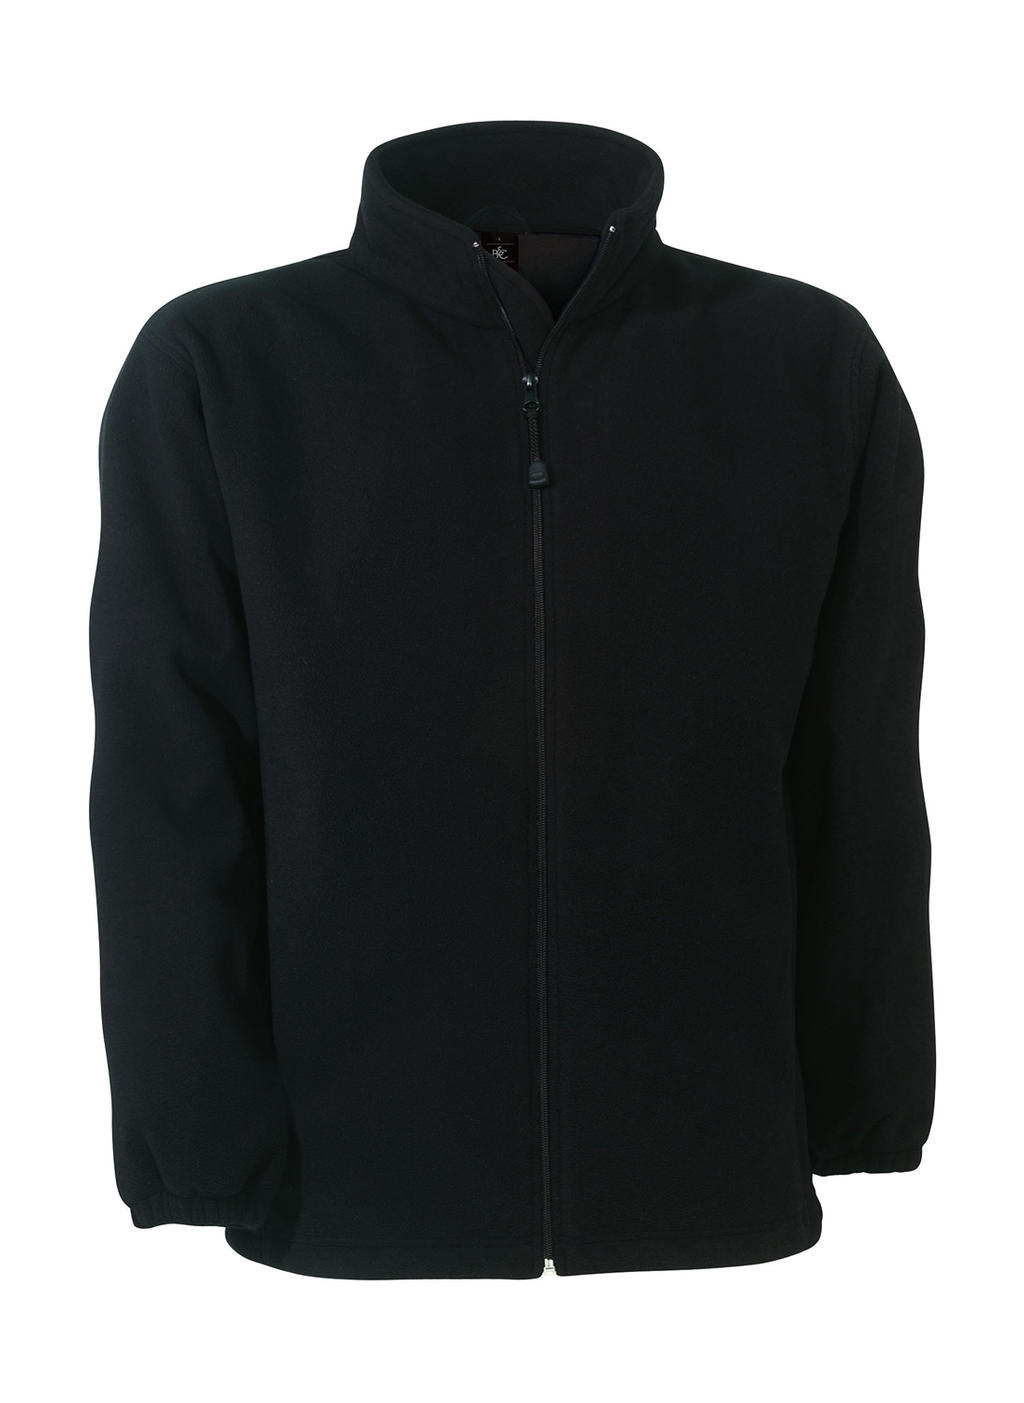  WindProtek Waterproof Fleece Jacket in Farbe Black